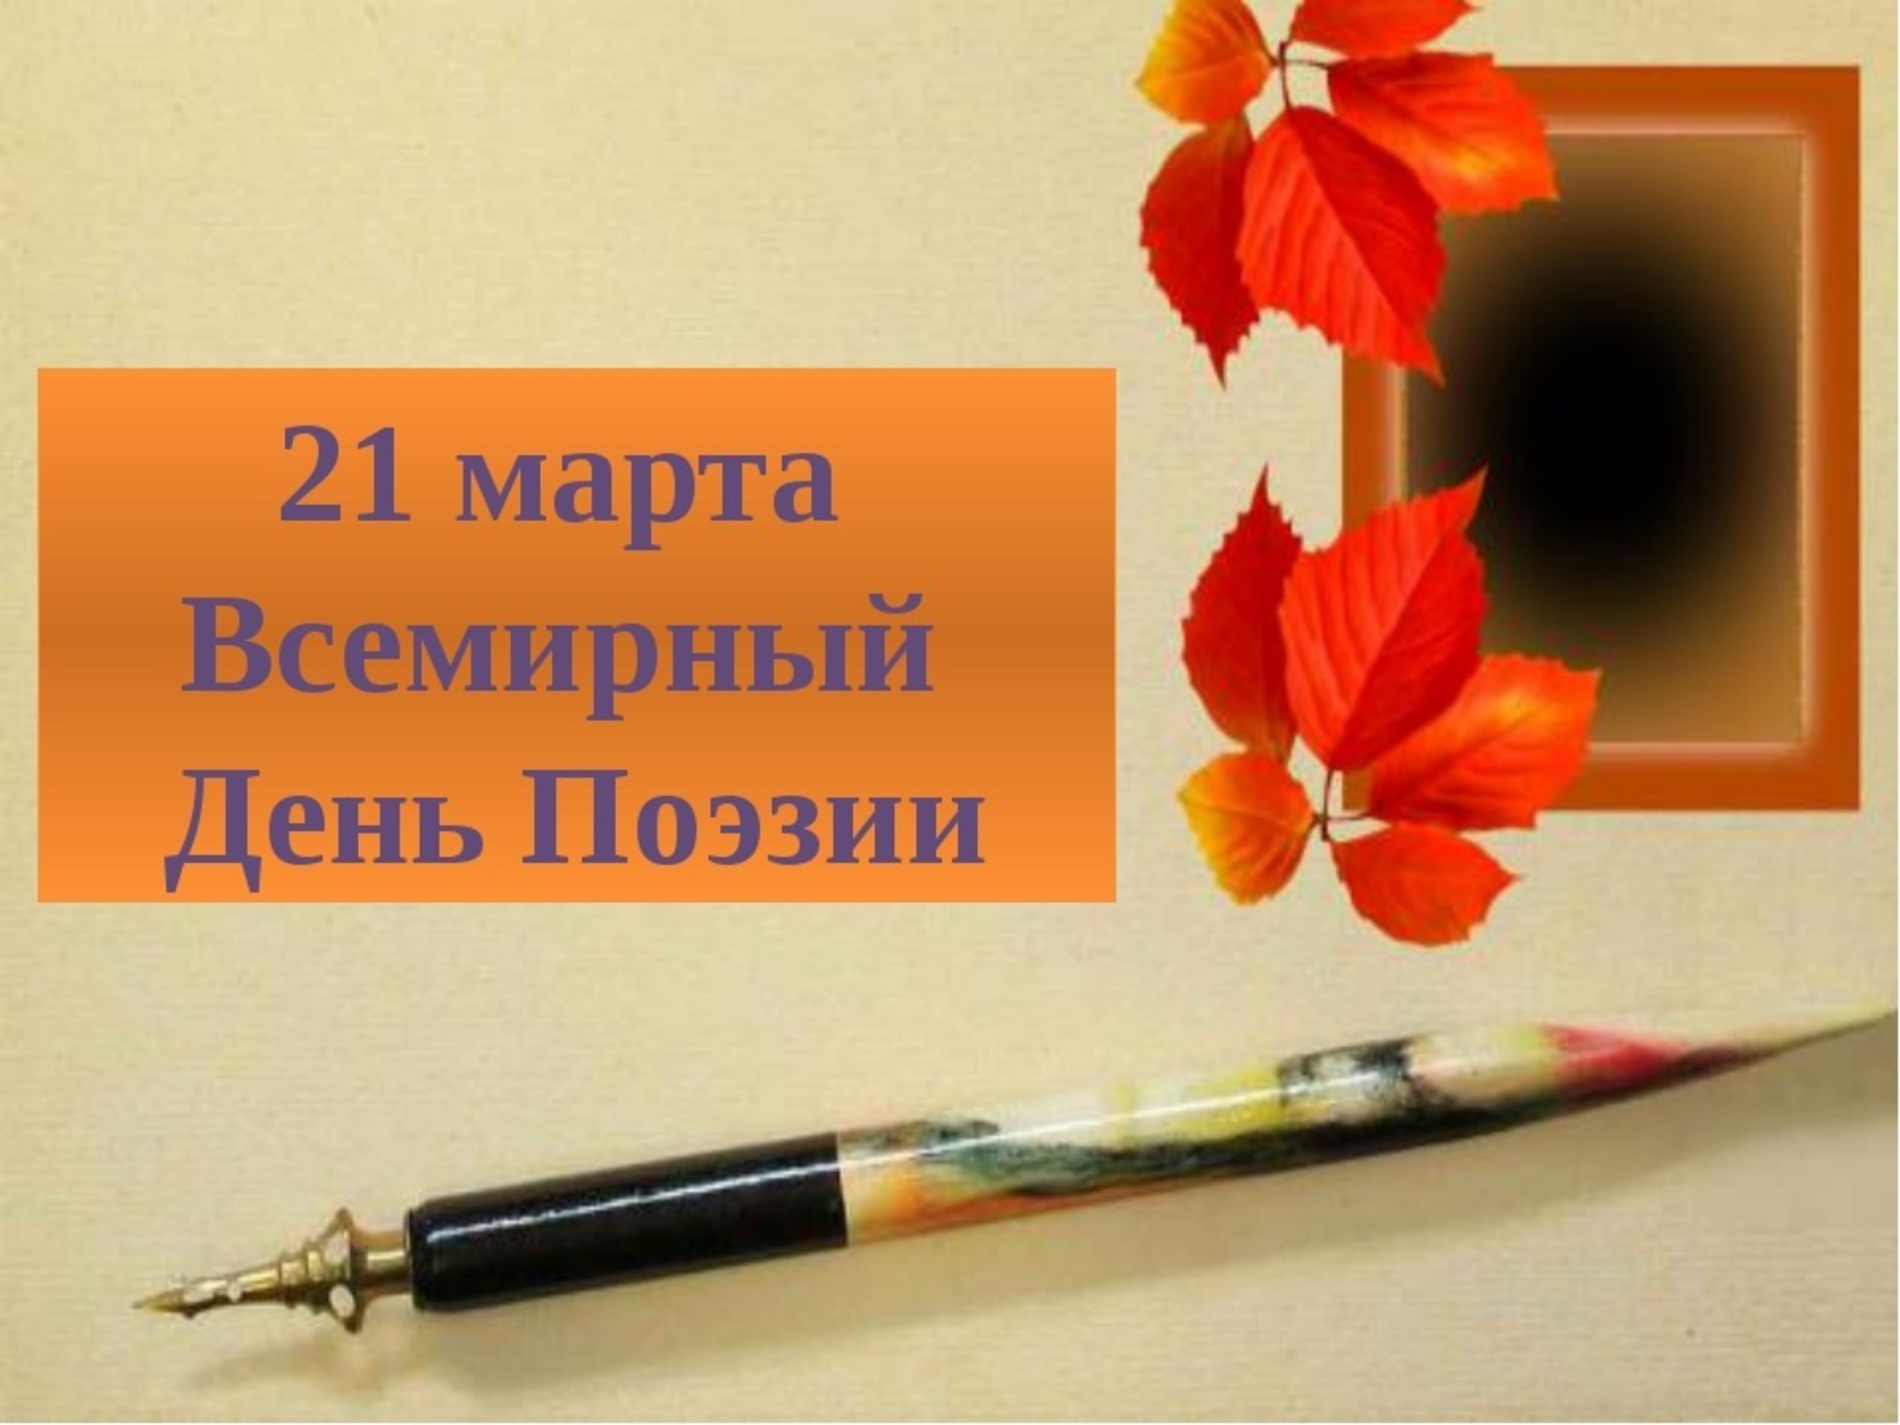 21 Марта Всемирный день поэзии